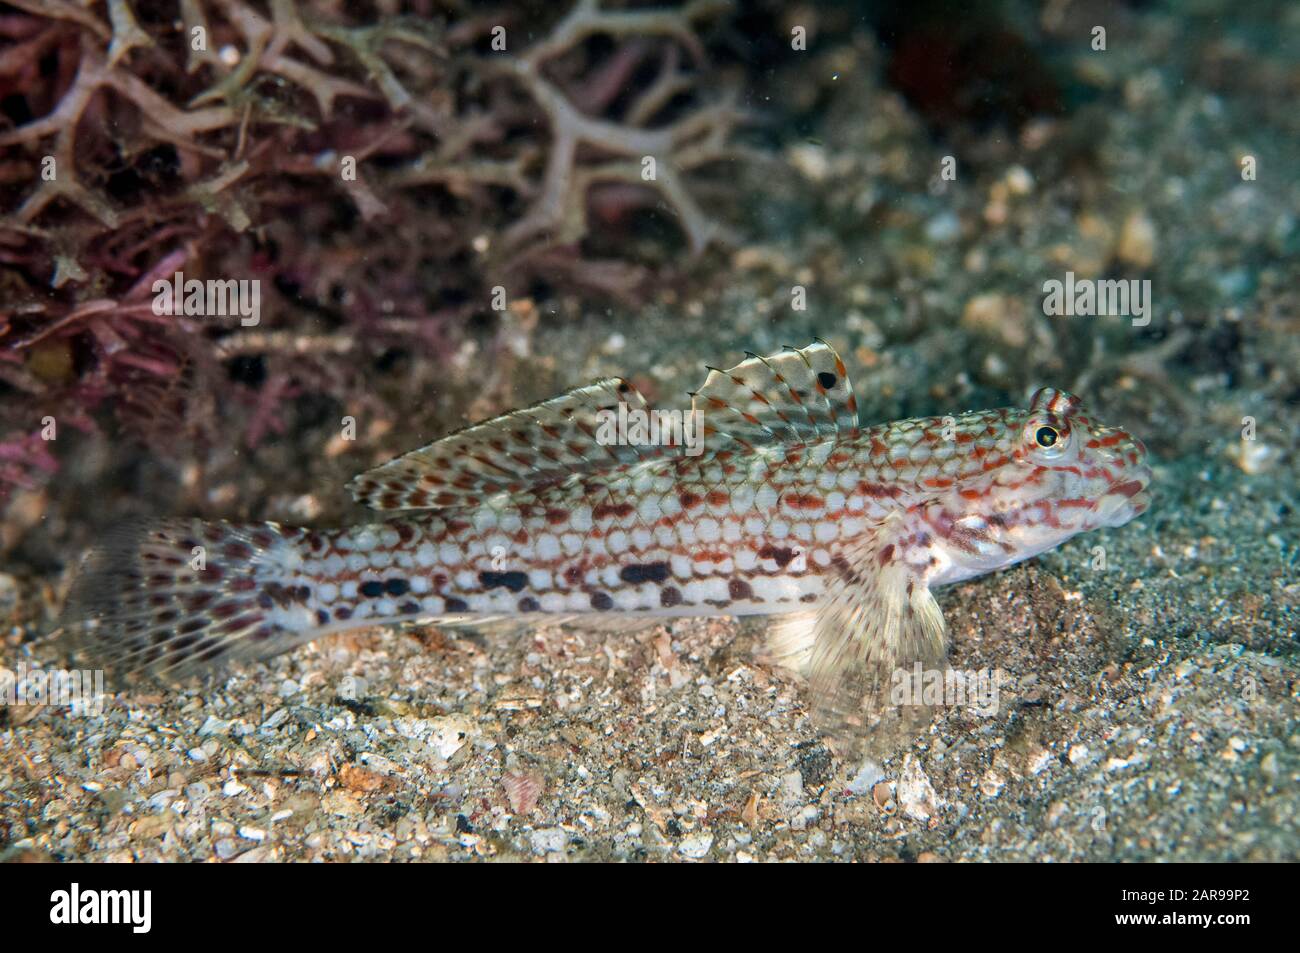 Dekorierte Goby, Istigobius decoratus, Makawide Slope Dive Site, Lembeh Straits, Sulawesi, Indonesien, Pazifischer Ozean Stockfoto